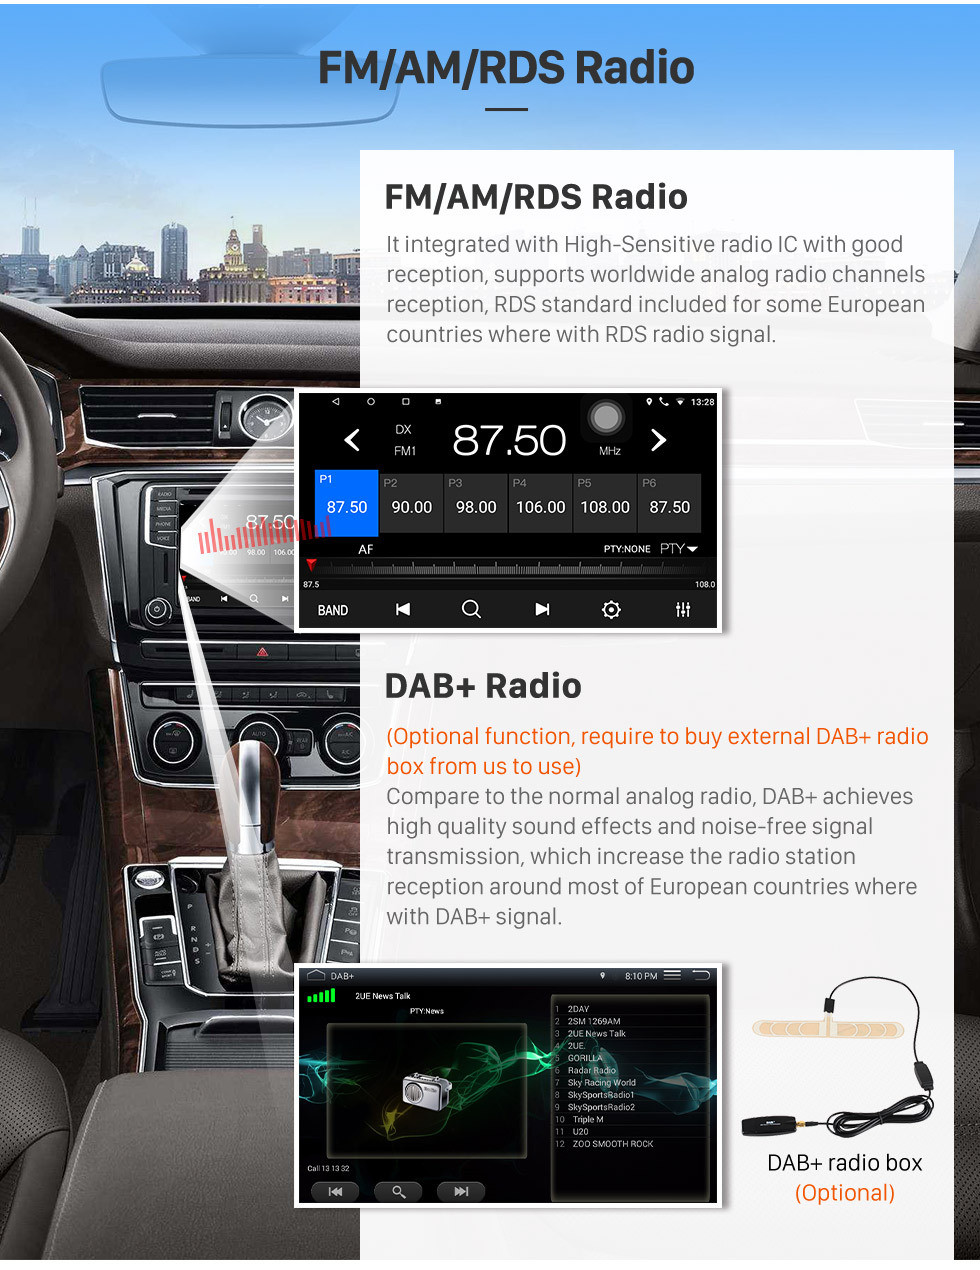 Seicane Android 10.0 9 polegada Touchscreen GPS de Navegação GPS para 2012-2014 Toyota innova Auto A / C com suporte USB Bluetooth WIFI Carplay SWC Retrovisor câmera